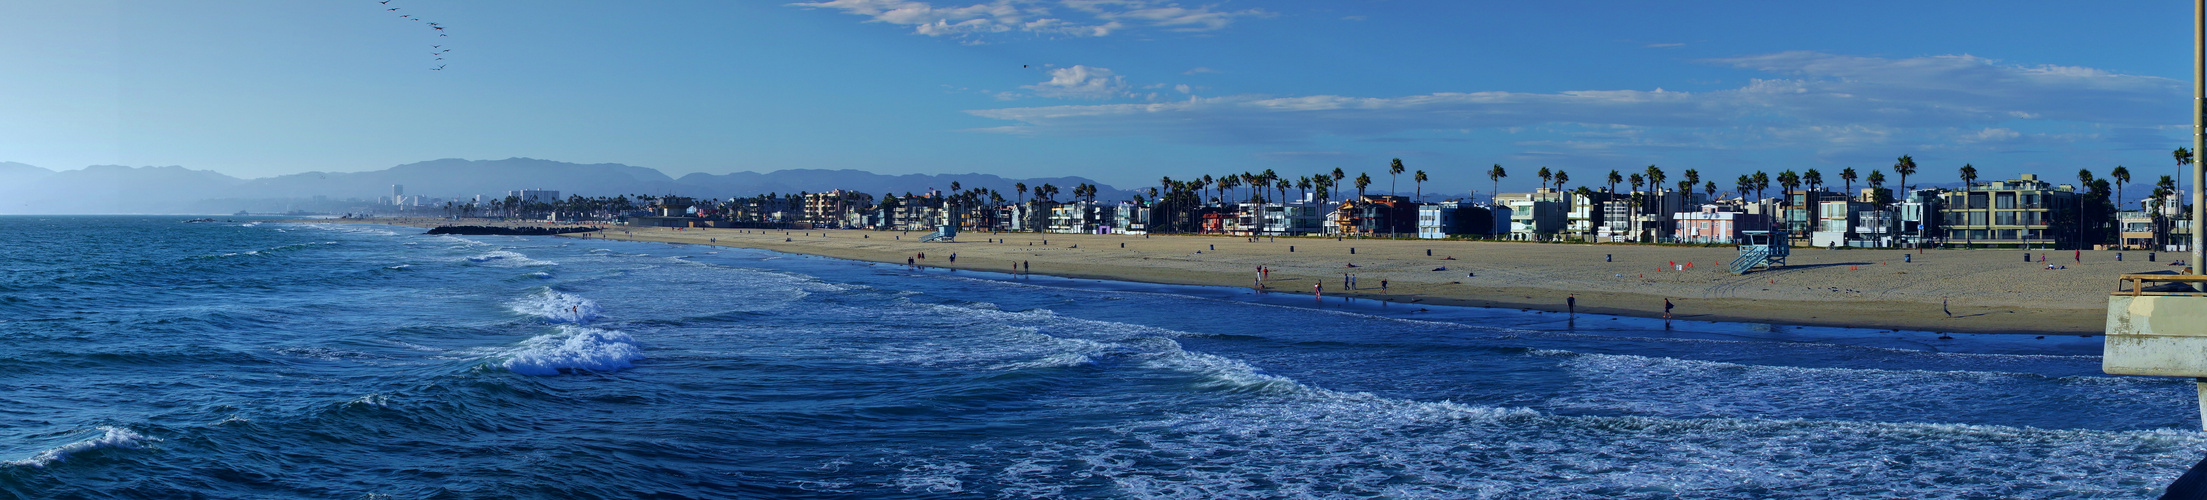 Panorama Venice Beach, Los Angeles, CA